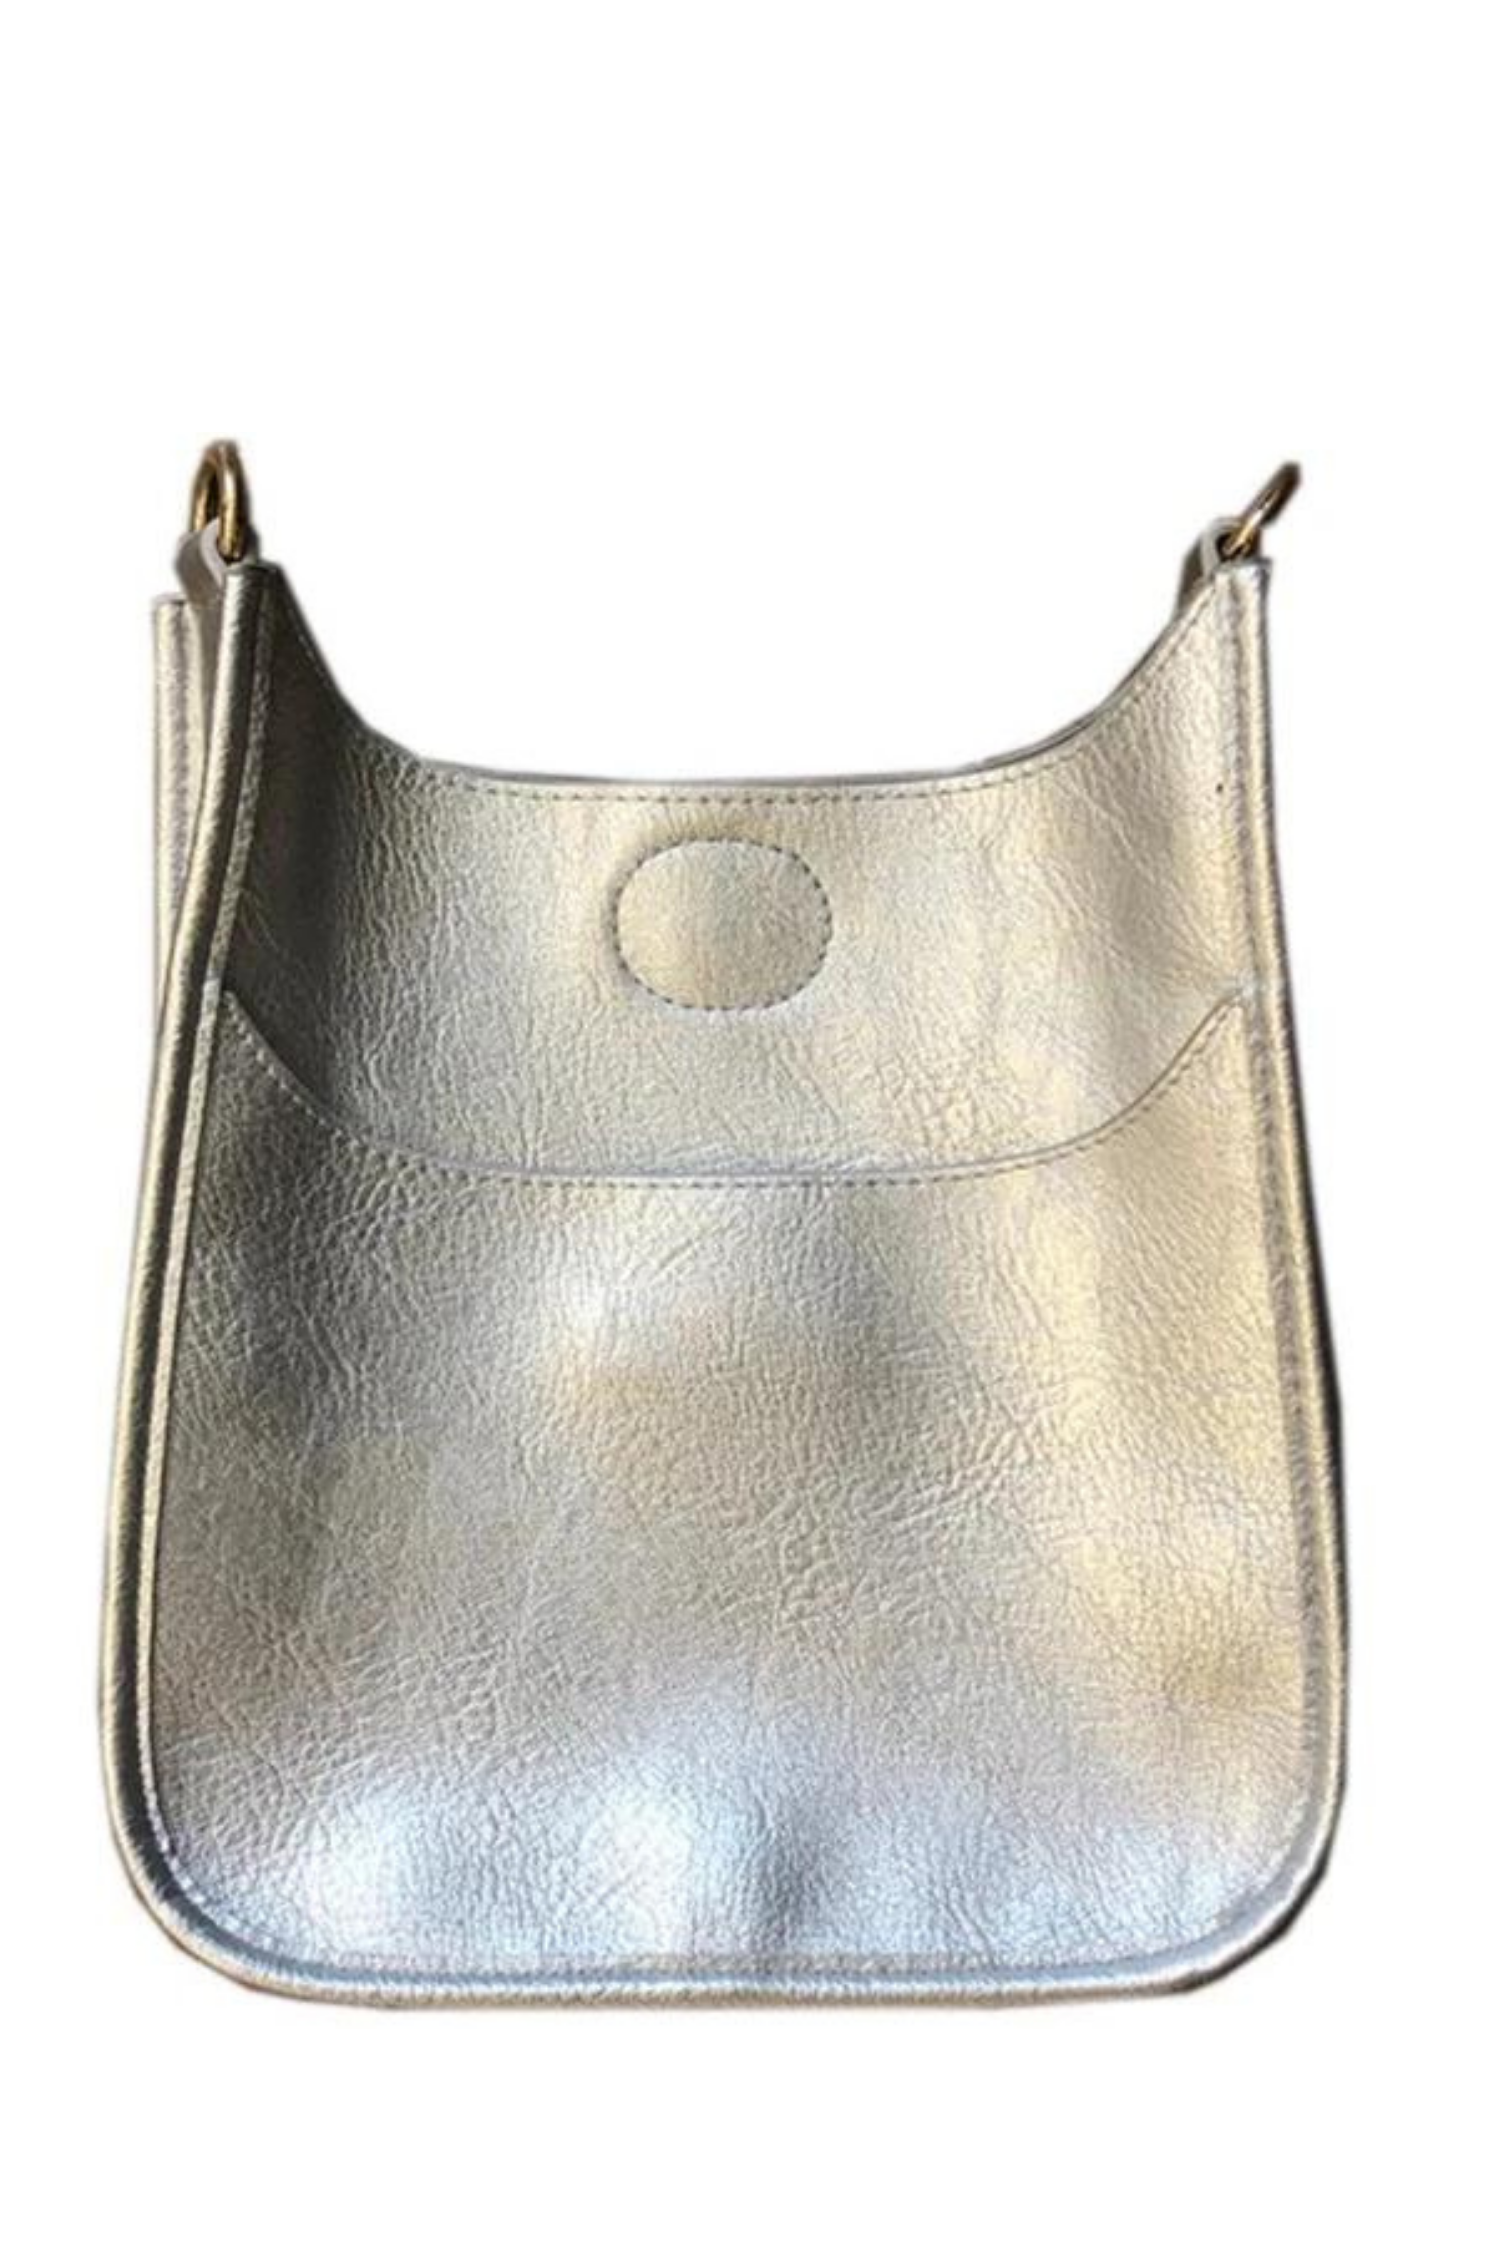 Vegan Leather Bags | Women's Handbags, Bag Straps & More